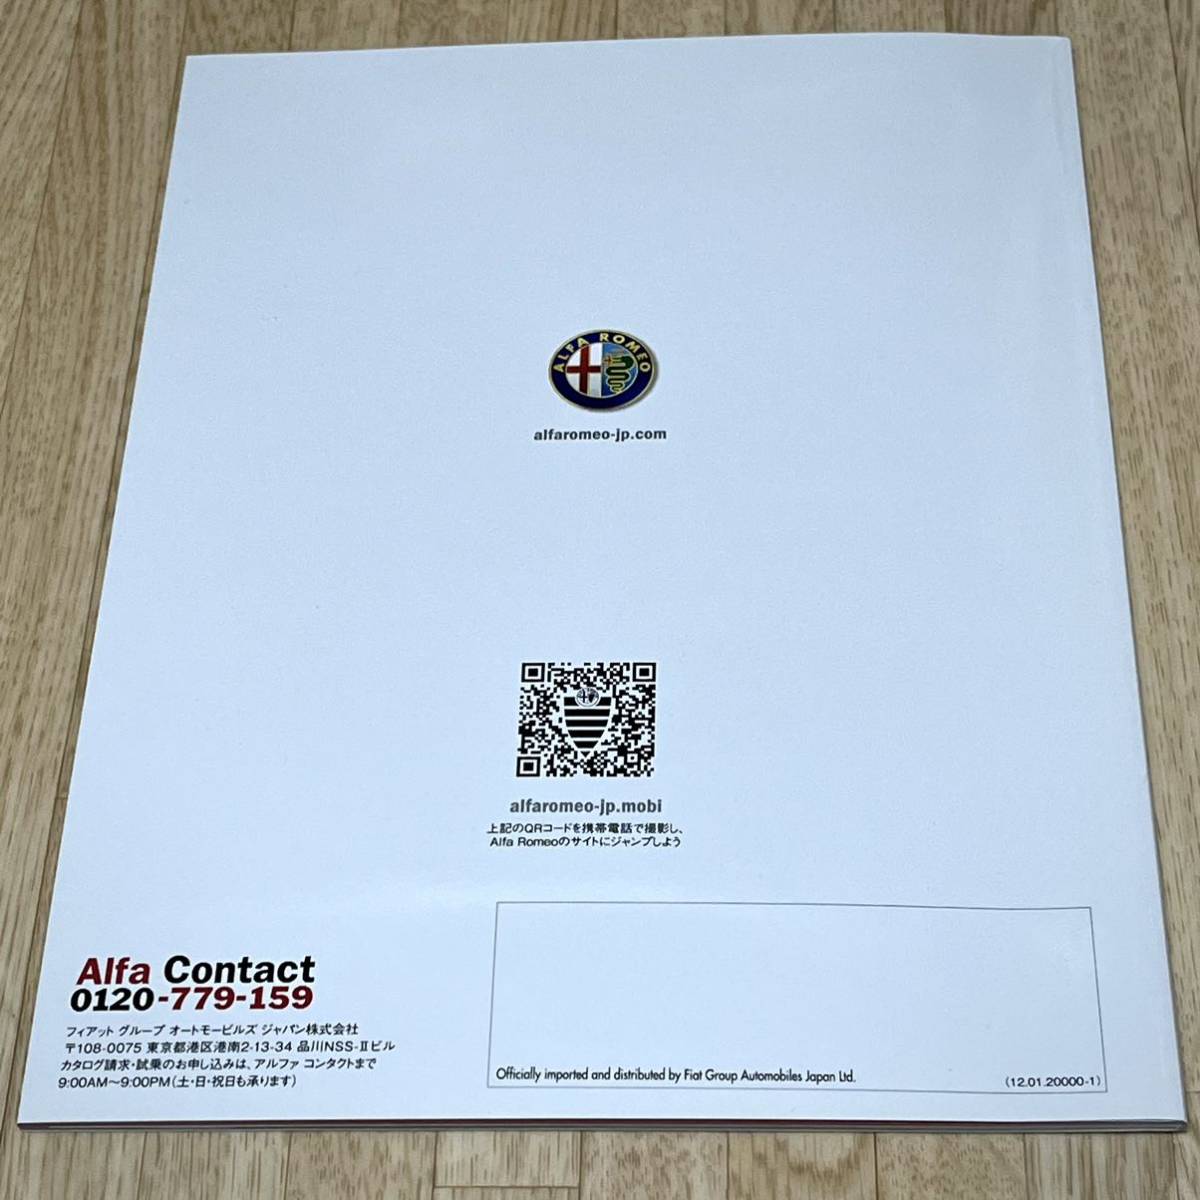 [ не использовался ] прекрасный товар Alpha Romeo Giulietta Giulietta основной каталог 2012 год 1 месяц quadrifoglio verute& цена * главный различные изначальный таблица новый товар 2 позиций комплект *